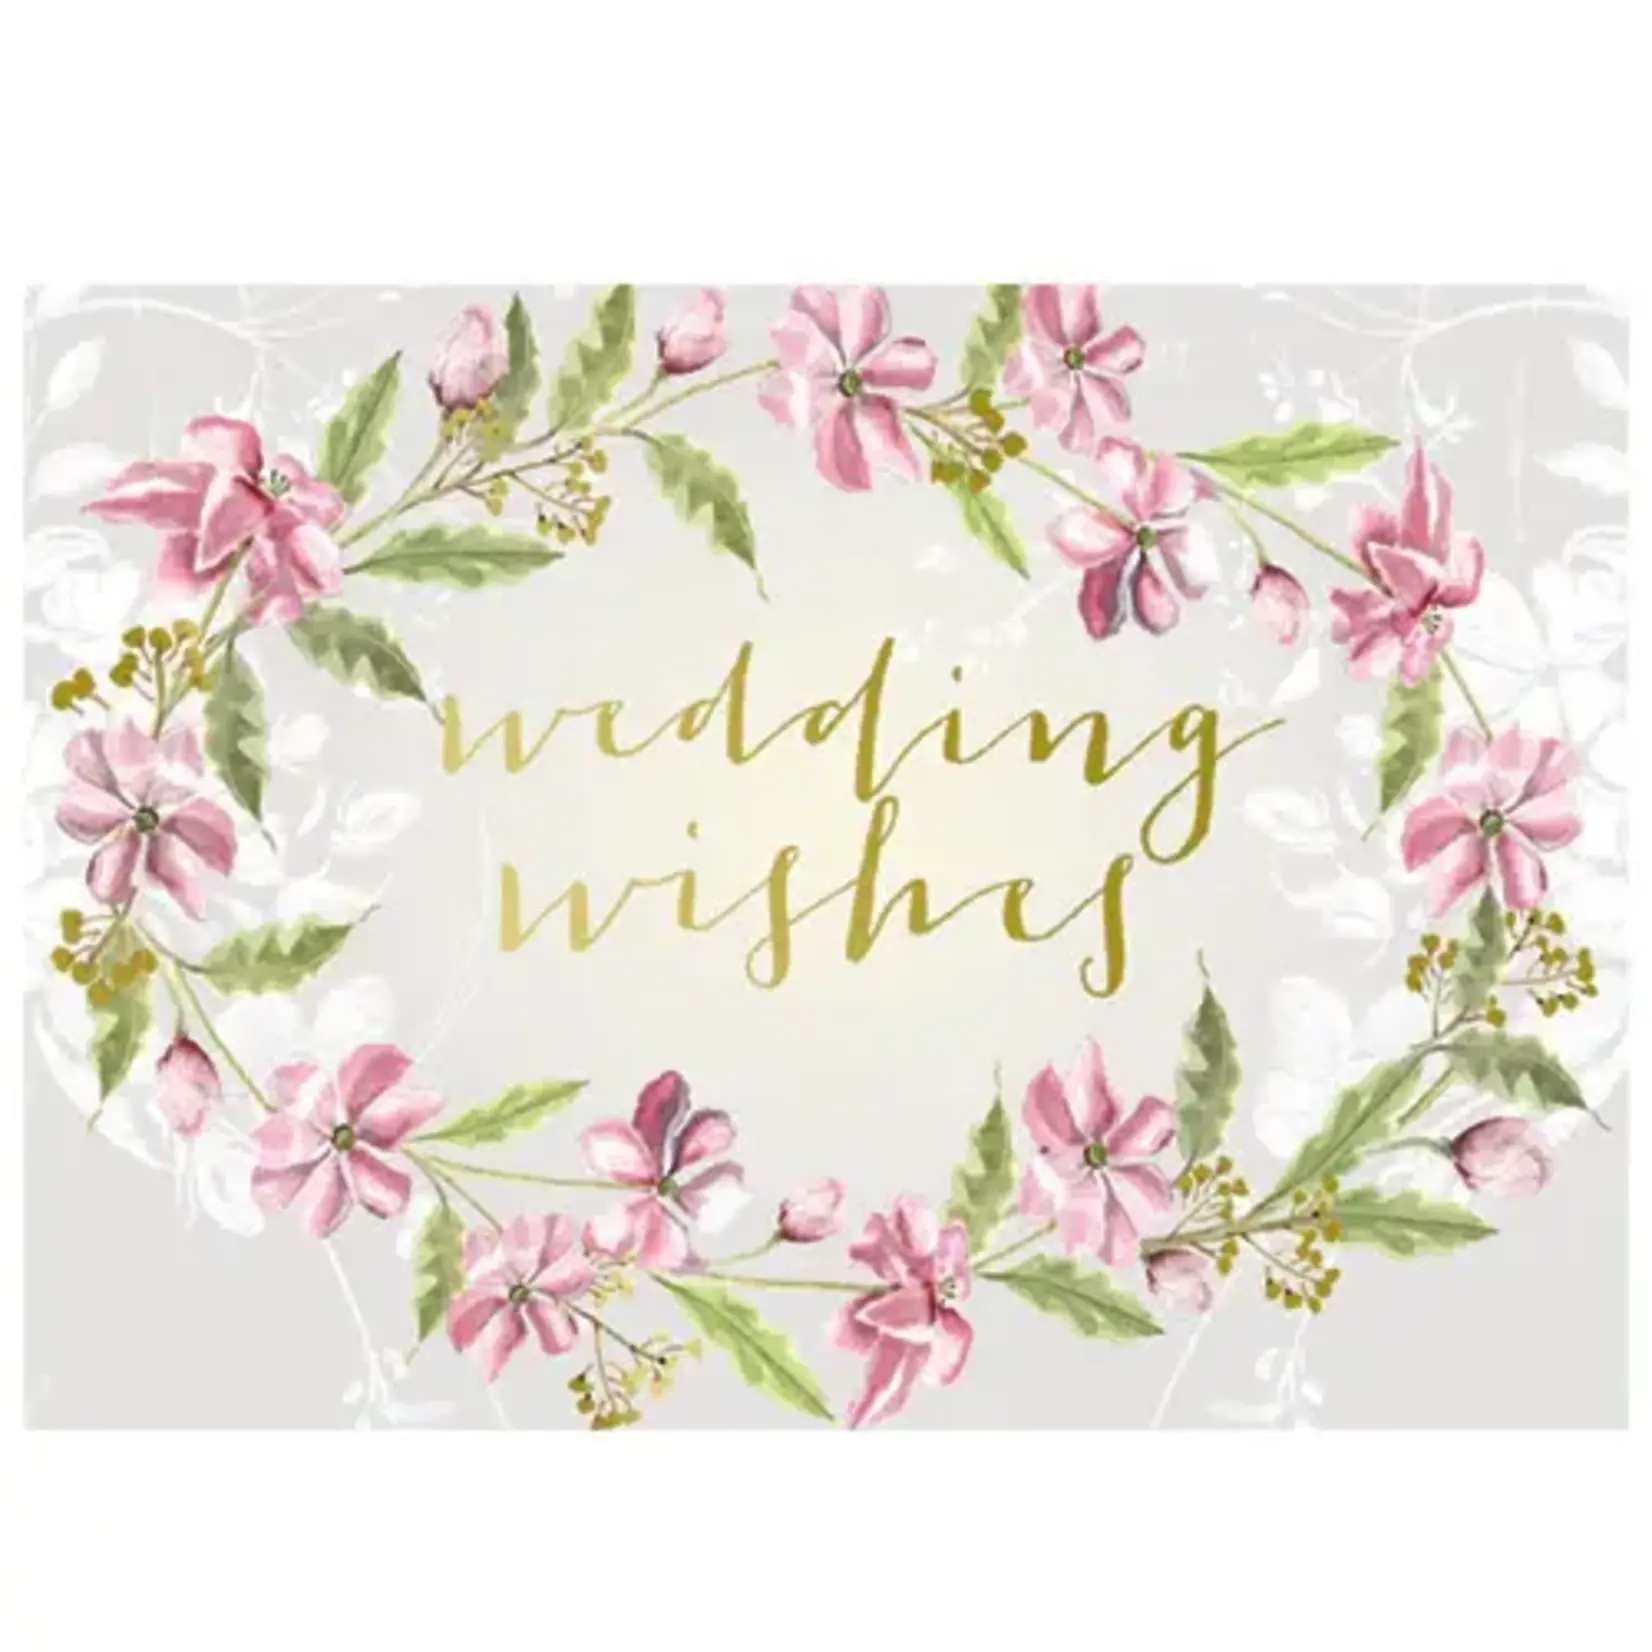 Wedding Wishes Card_Blank Inside